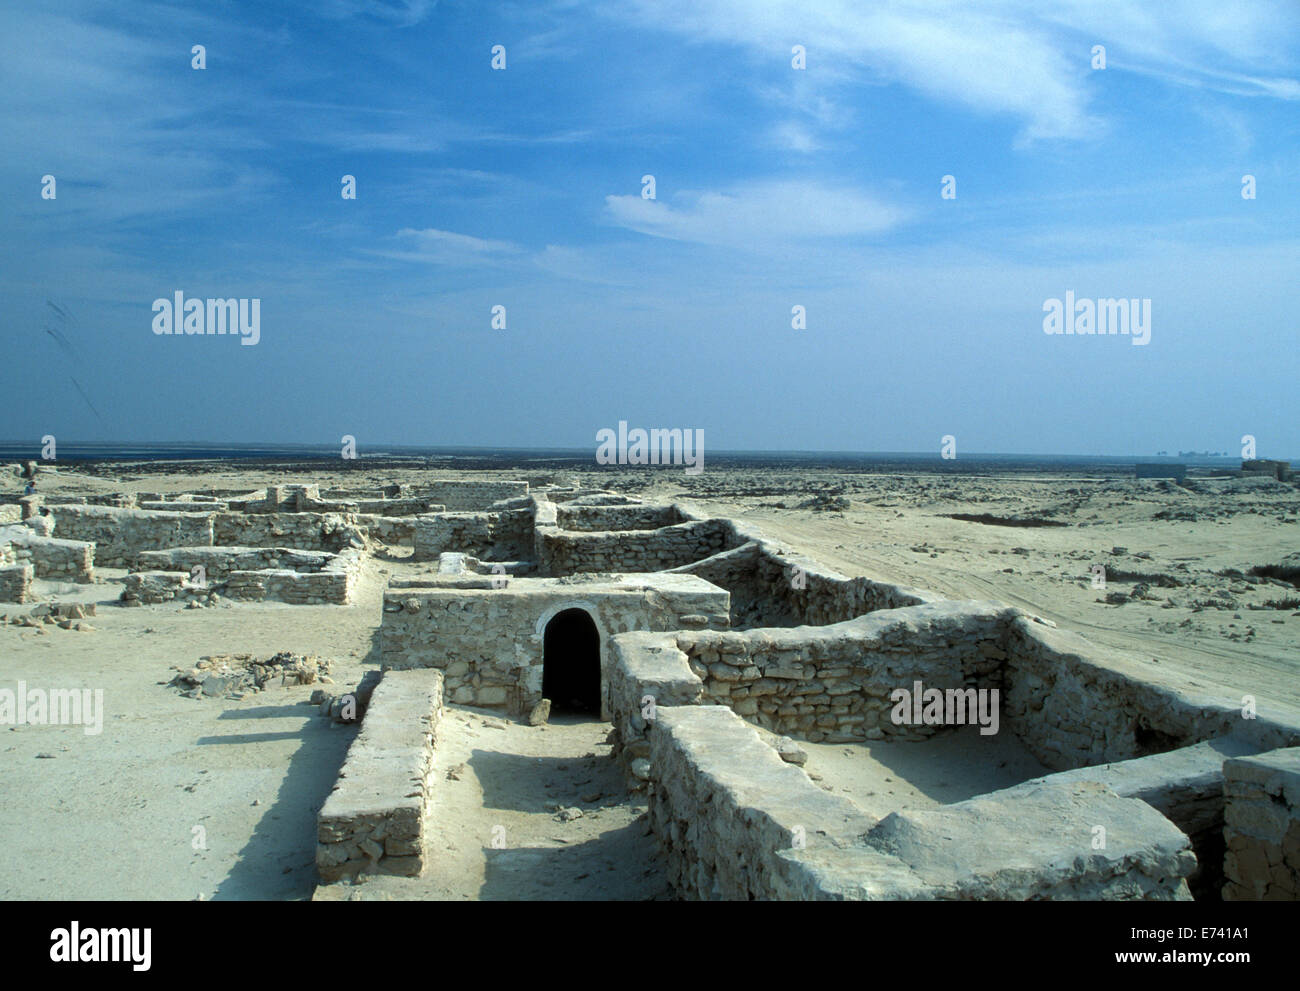 Les ruines d'un peuplement précoce à al-Zubarah, Qatar, vers 18-19th siècle, liste du patrimoine mondial de l'ONU. Banque D'Images